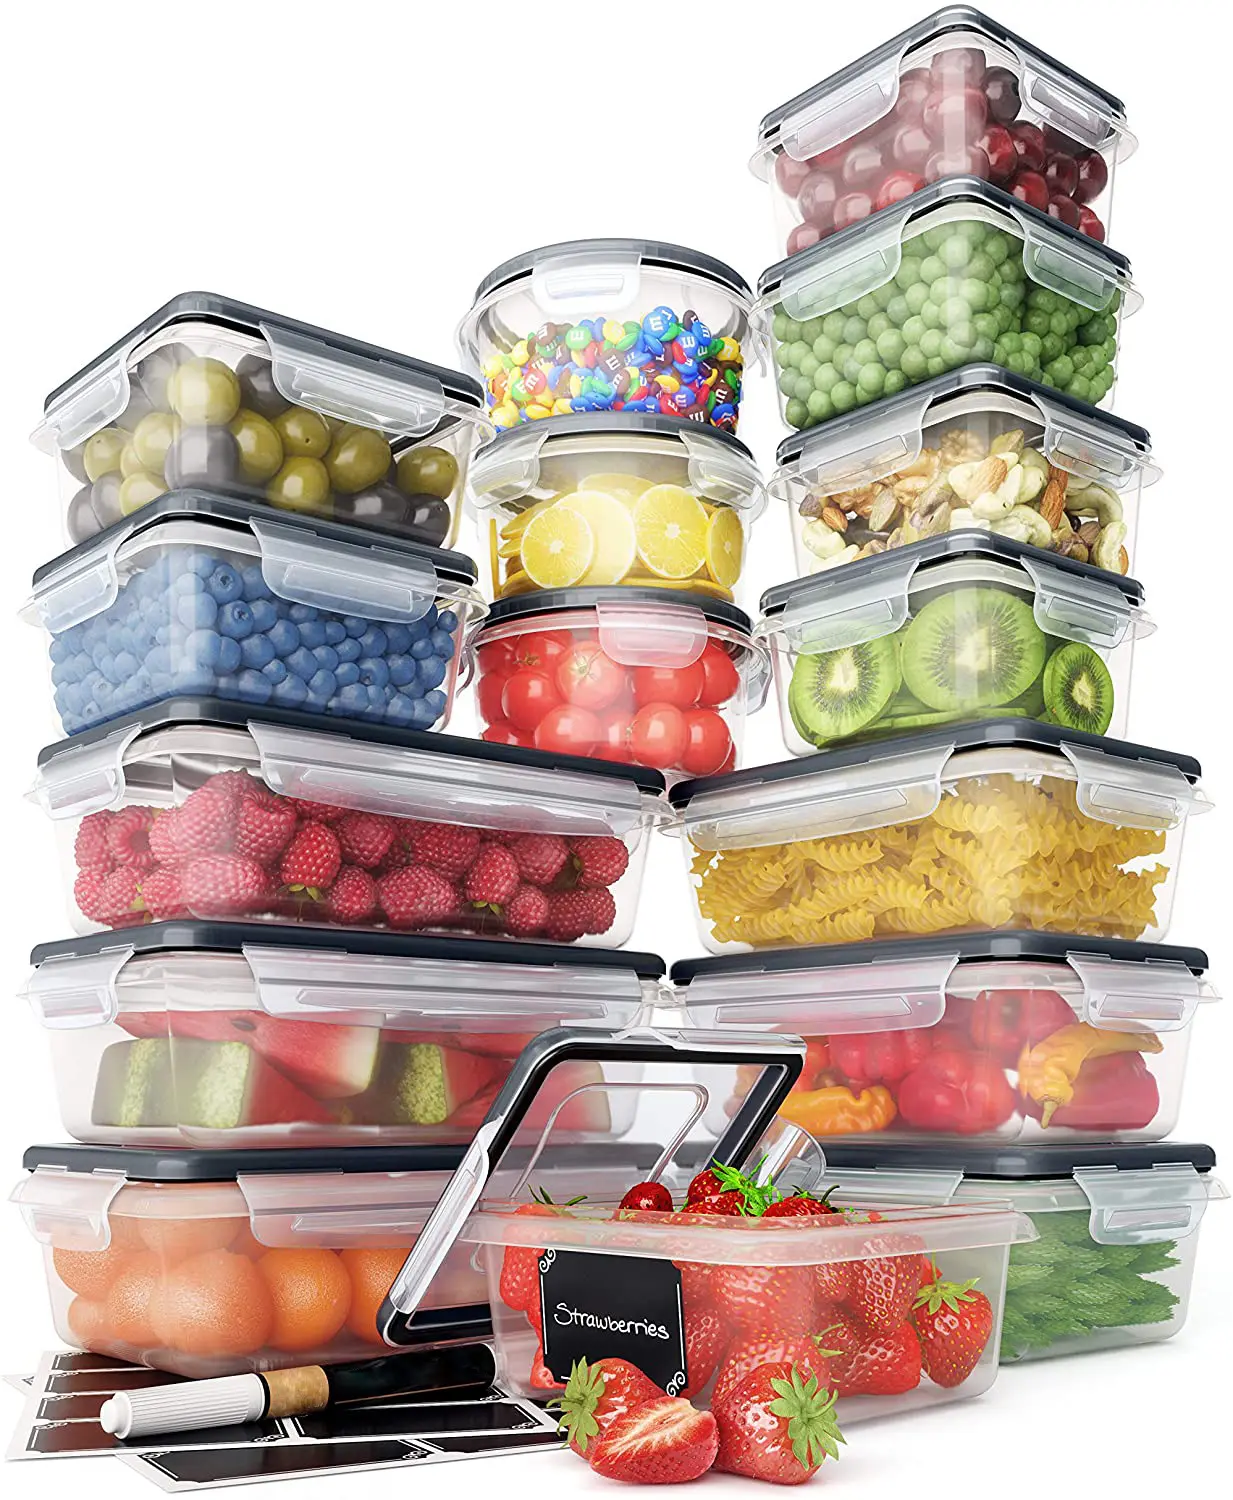 16 Piece nhựa thực phẩm container Set với nắp đậy rõ ràng nhà bếp tổ chức Hộp Ăn Trưa kín thực phẩm lưu trữ container Set